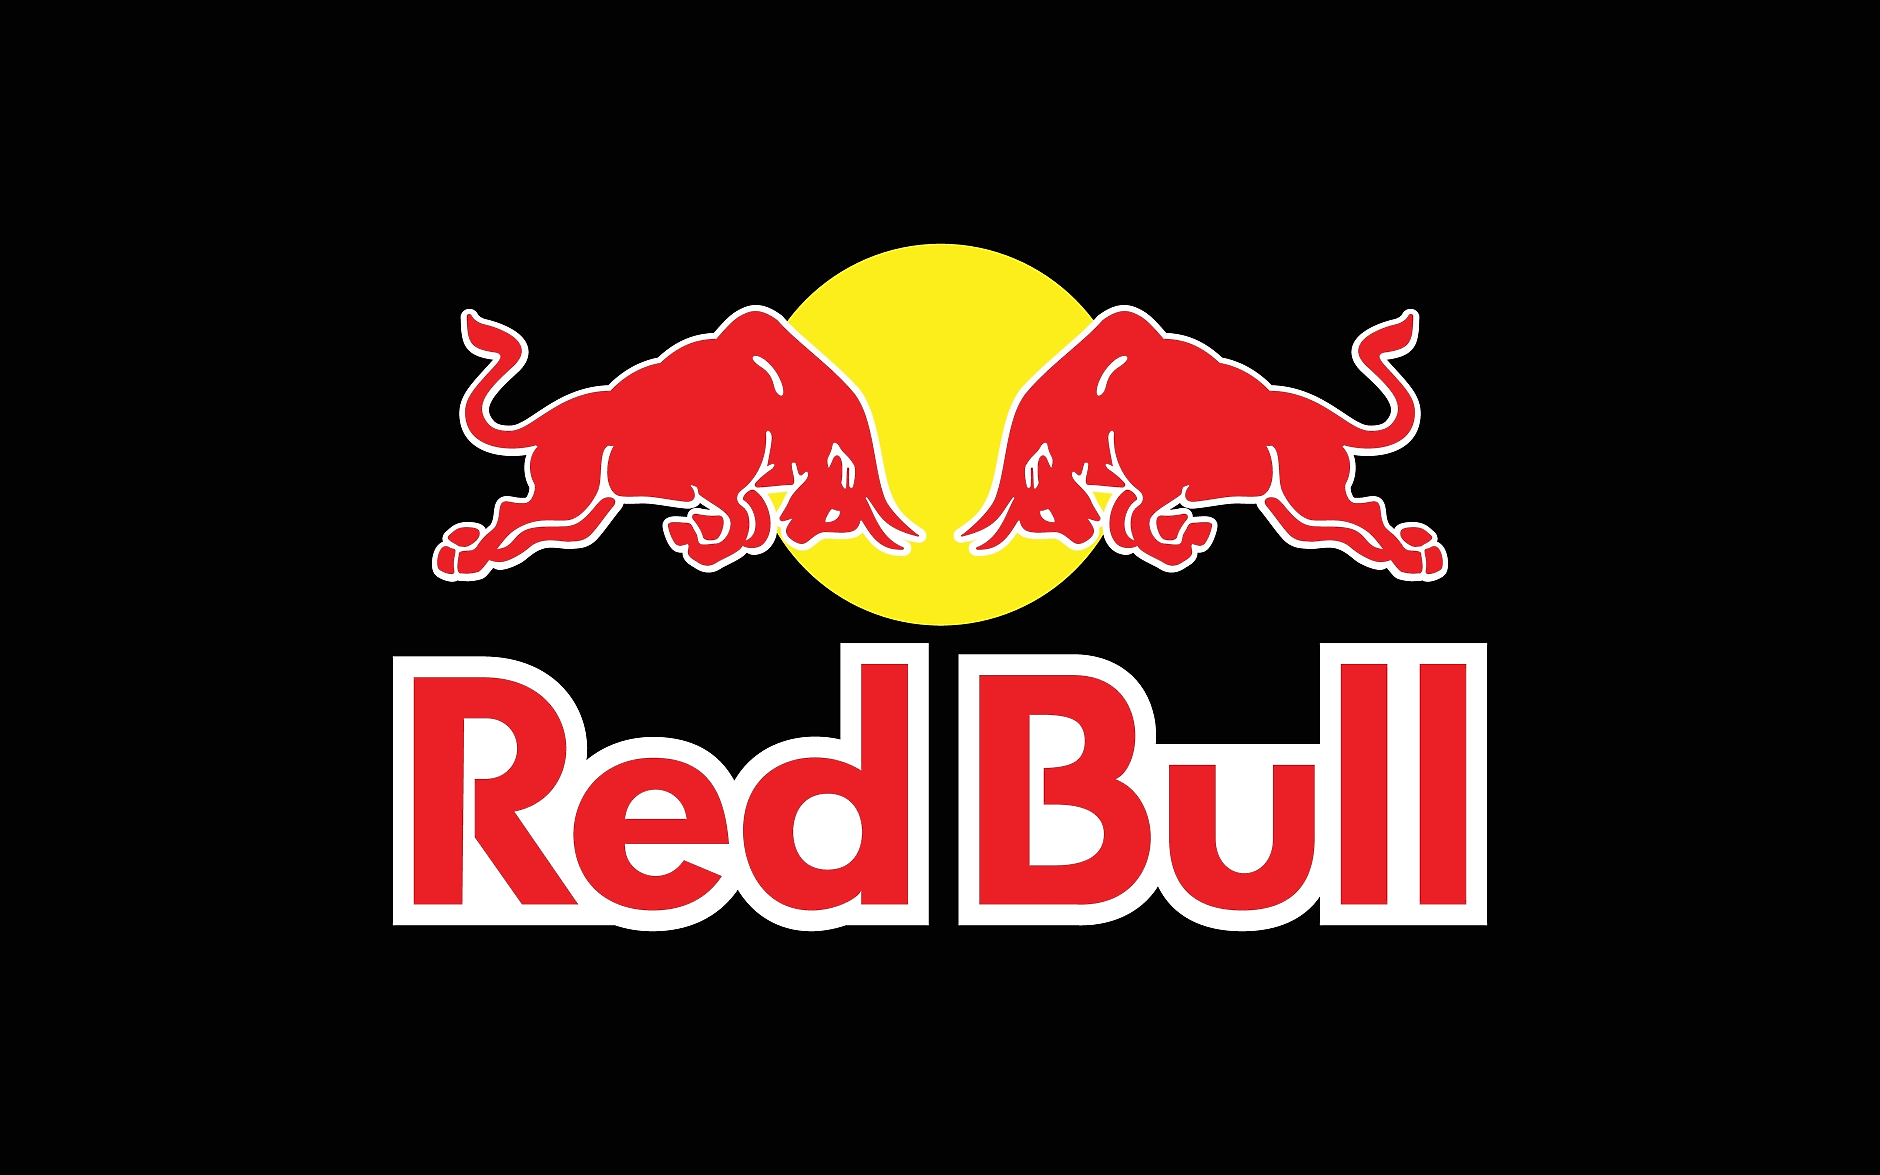 ЕК проверява Red Bull в нарушаване на антитръстовото законодателство